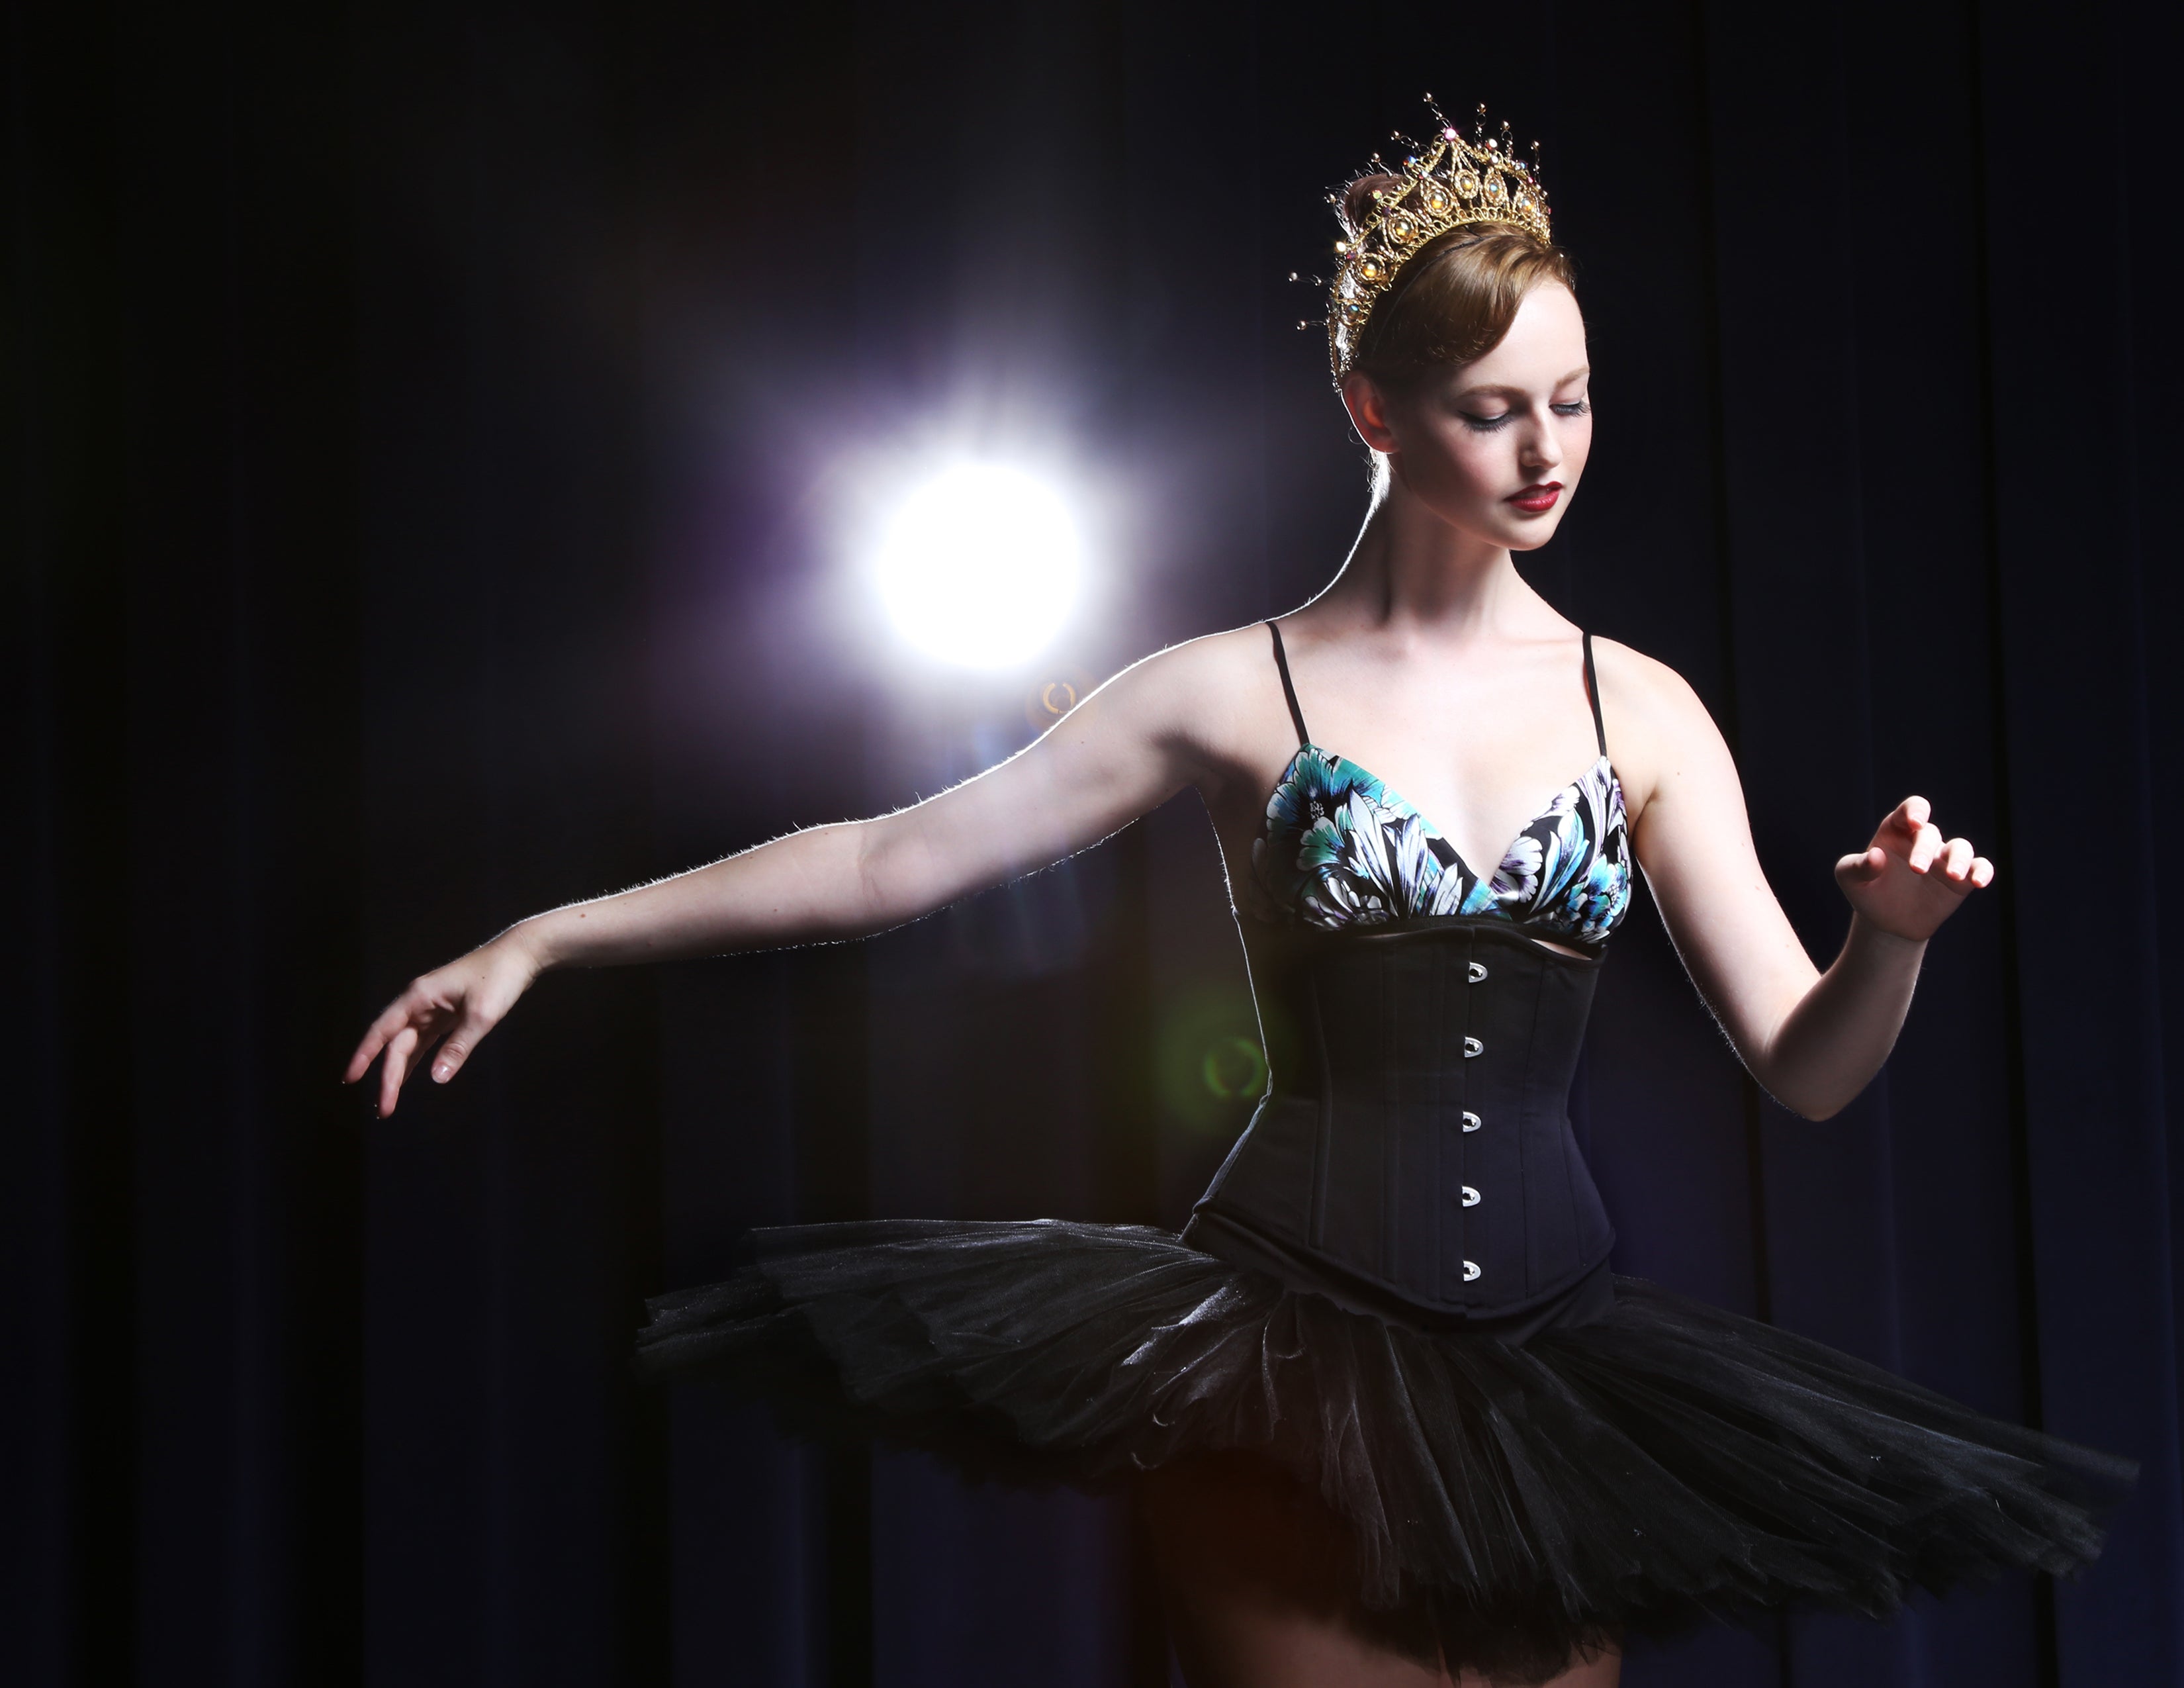 Ballerina wearing a tutu and black underbust corset waist cincher